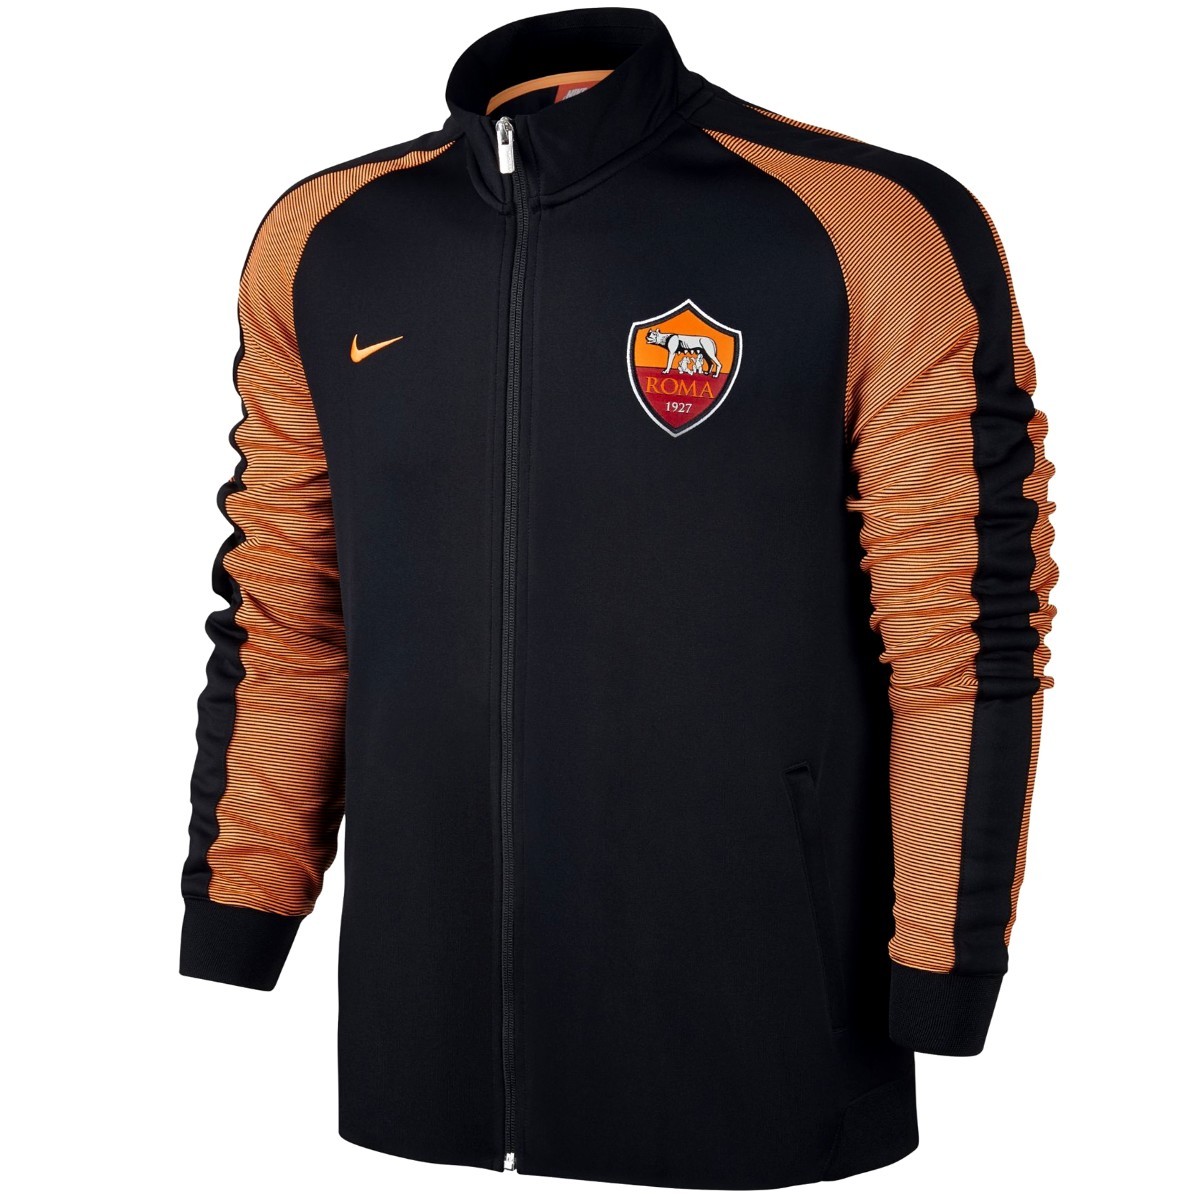 Factor malo Abstracción Haz todo con mi poder AS Roma chaqueta presentacion N98 Europa 2016/17 - Nike - SportingPlus.net